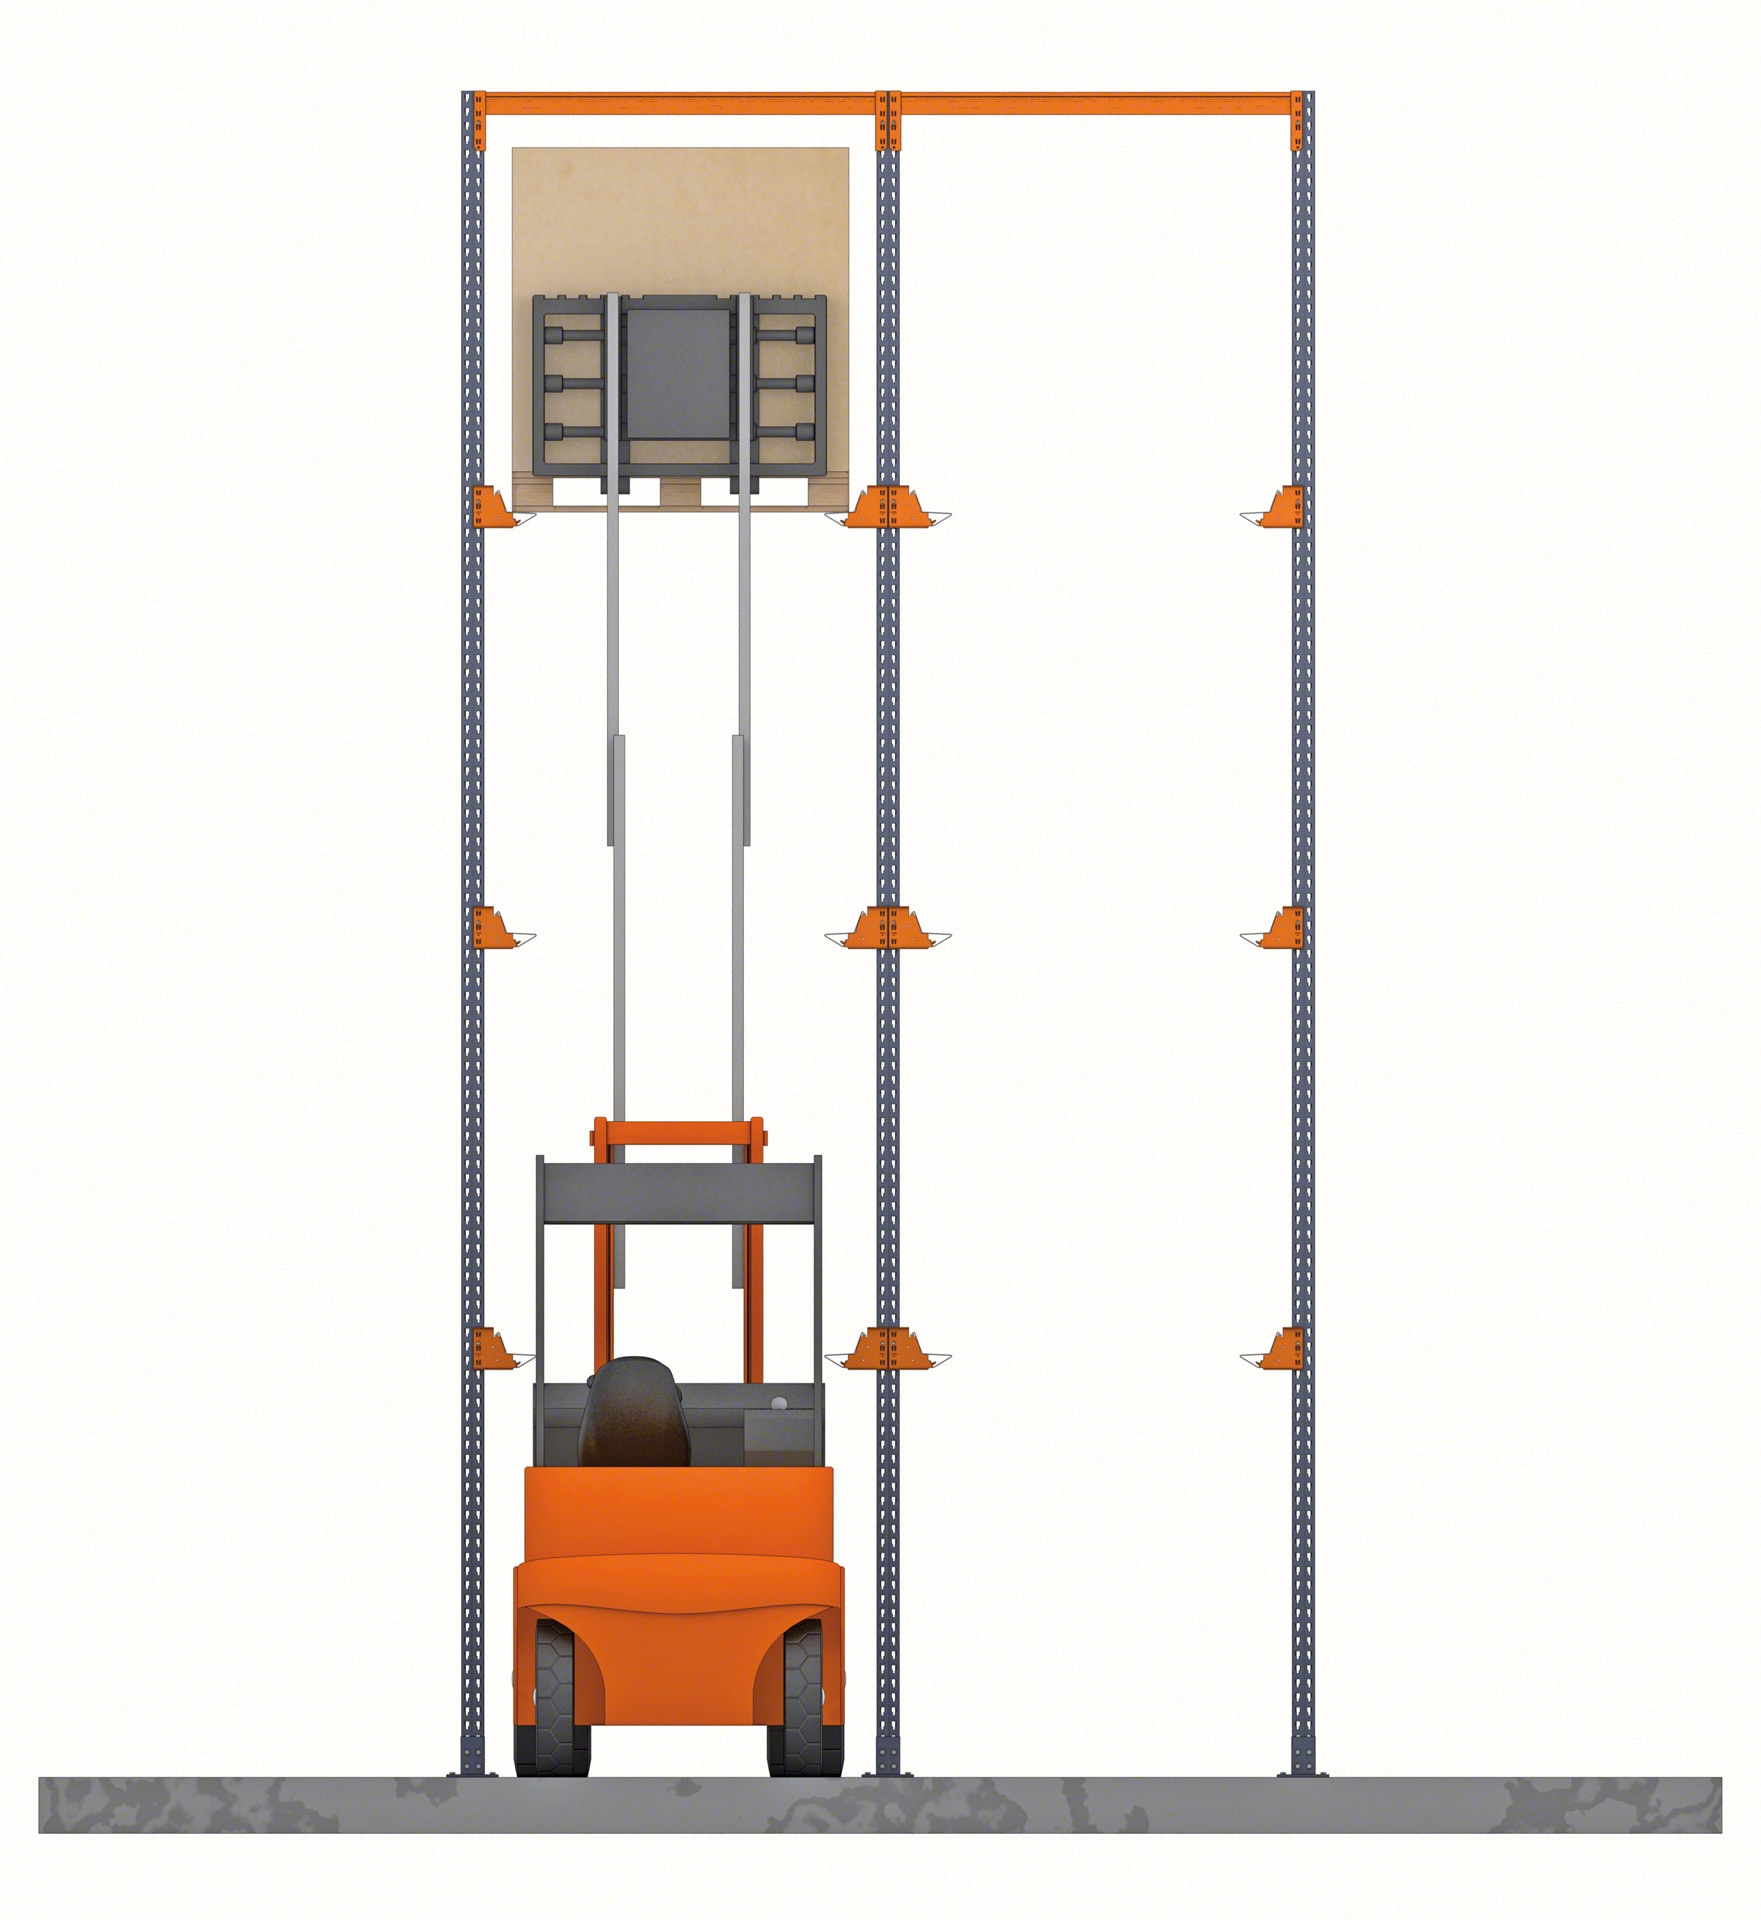 Bezpečnostní okraje jsou klíčové, aby vysokozdvižné vozíky nepoškodily konstrukci vjezdových regálů